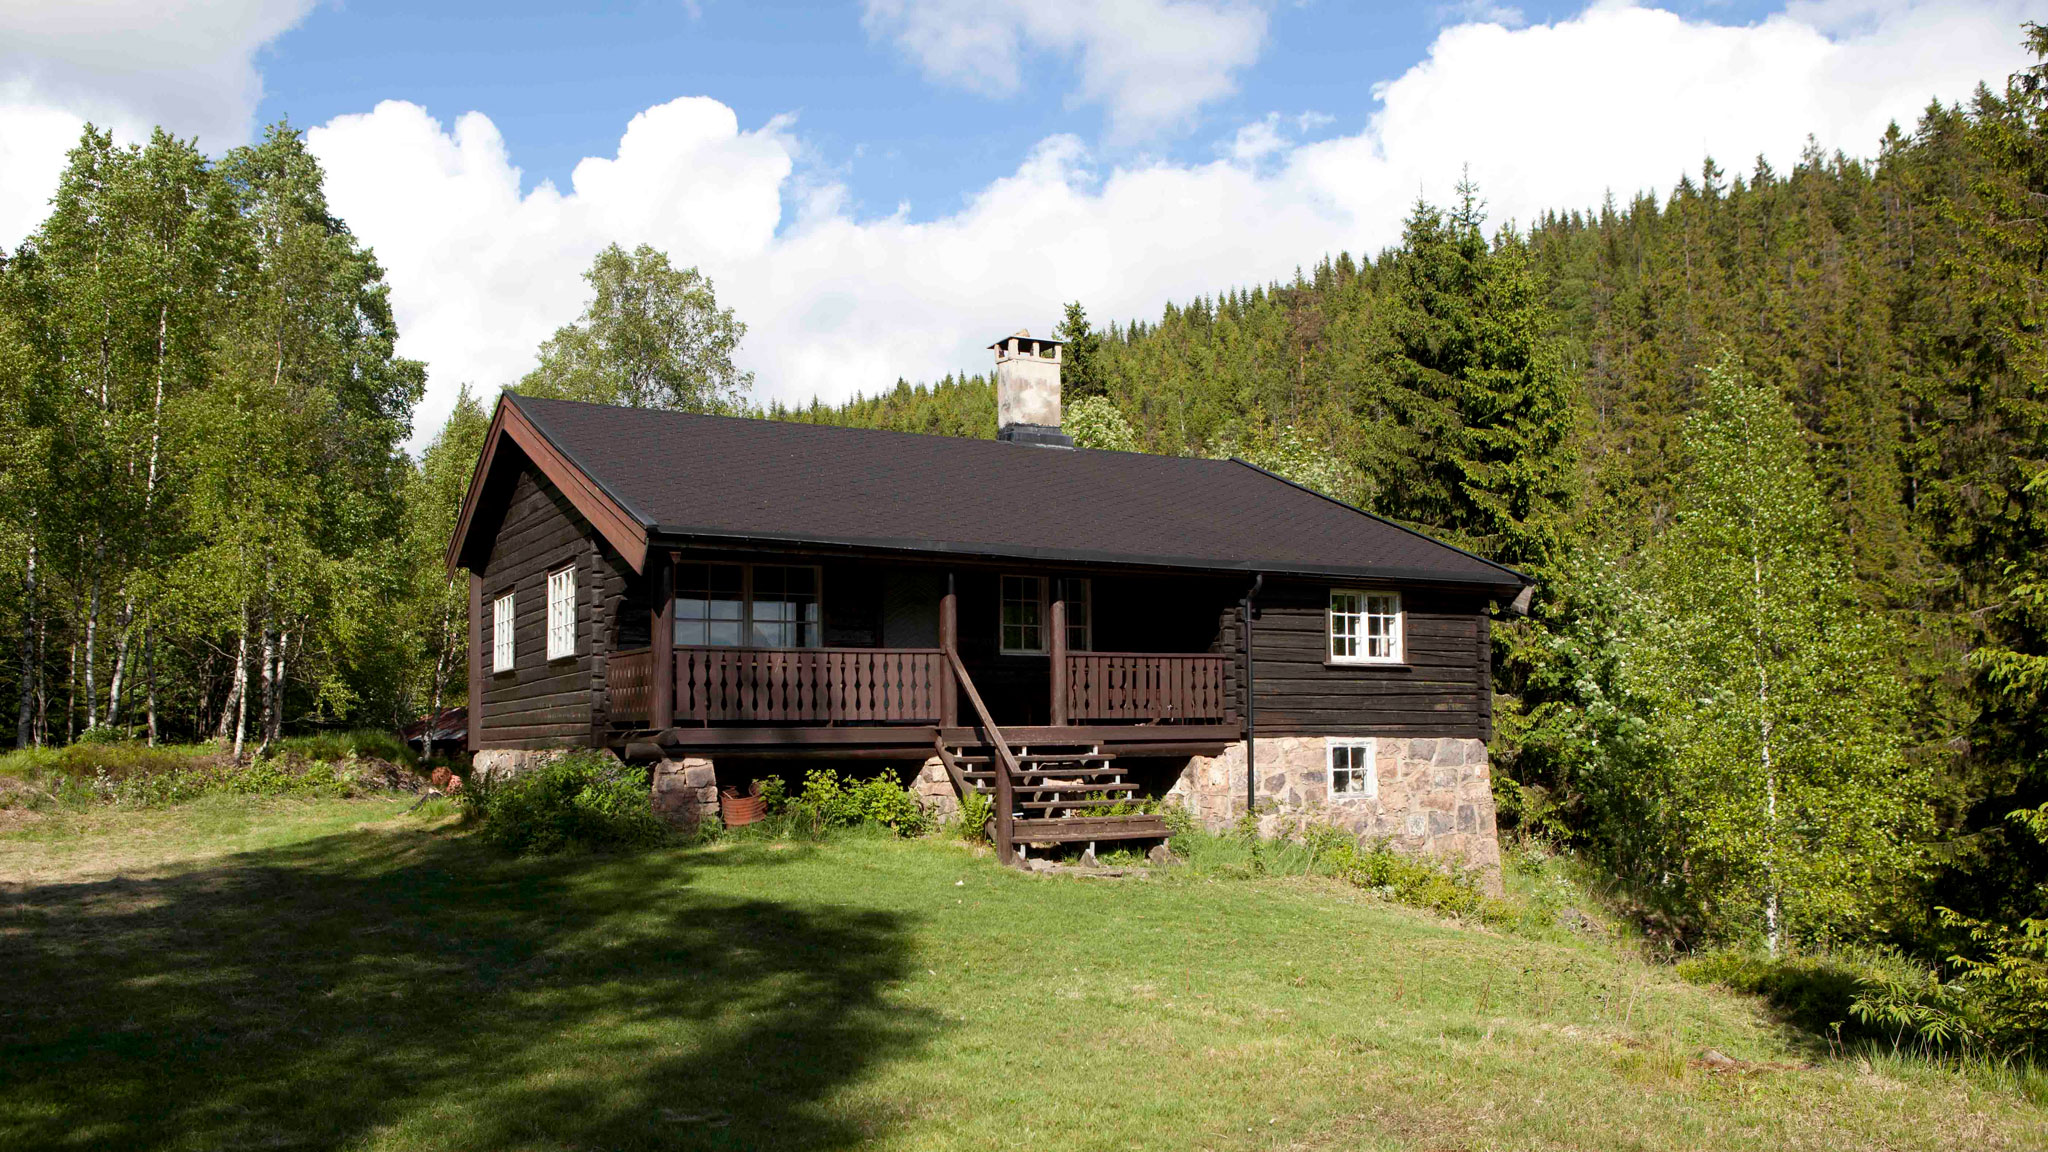 Legg sommarferien til BUL Oslo sine hytter | Bondeungdomslaget i Oslo